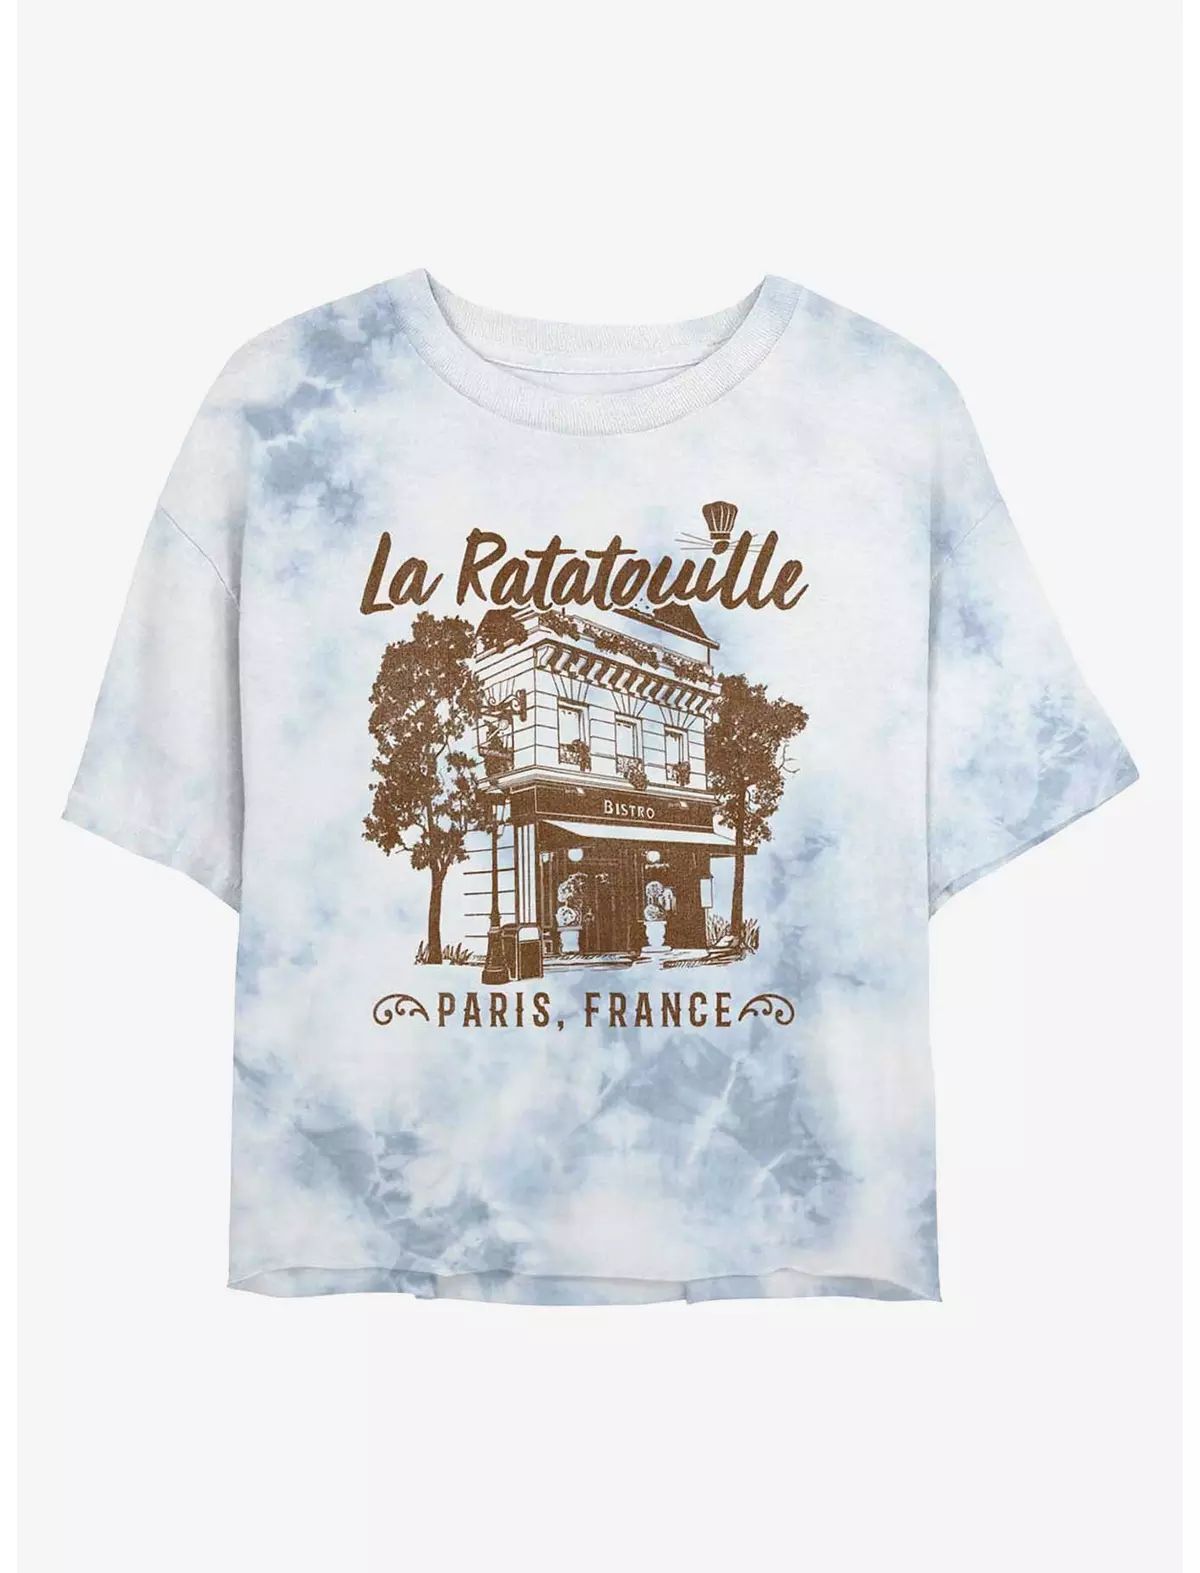 Disney Pixar Ratatouille Cafe Paris France Womens Tie-Dye Crop T-Shirt | BoxLunch